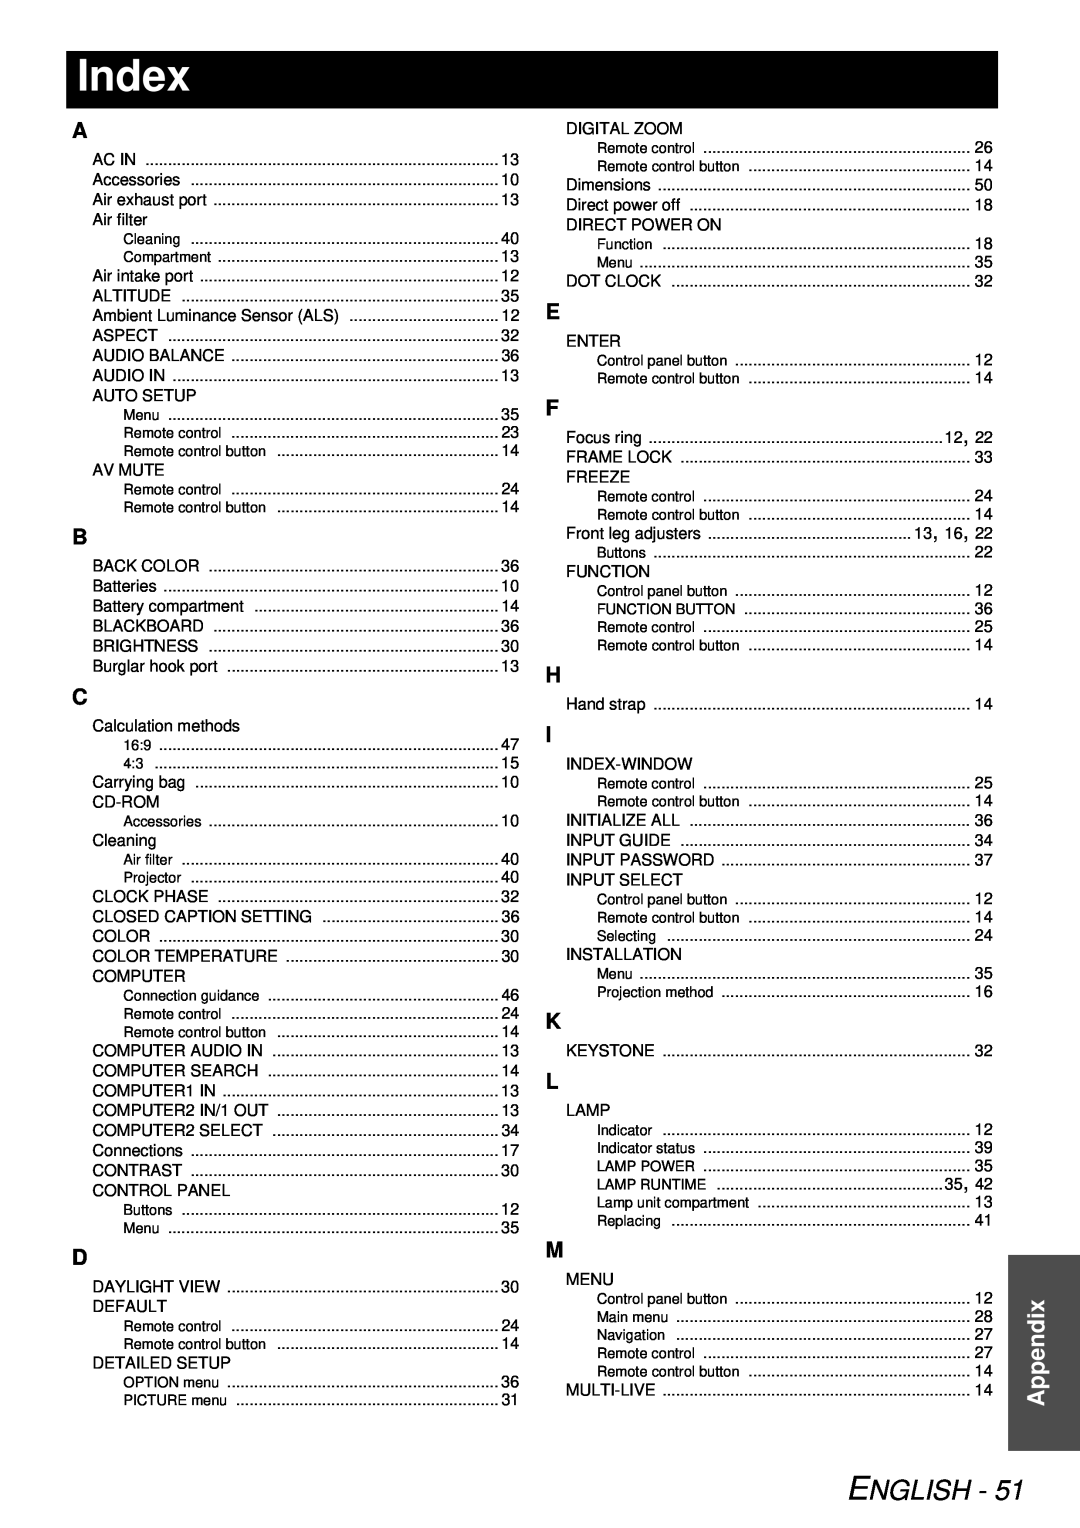 Panasonic PT-LB78U manual Index, English, Appendix 